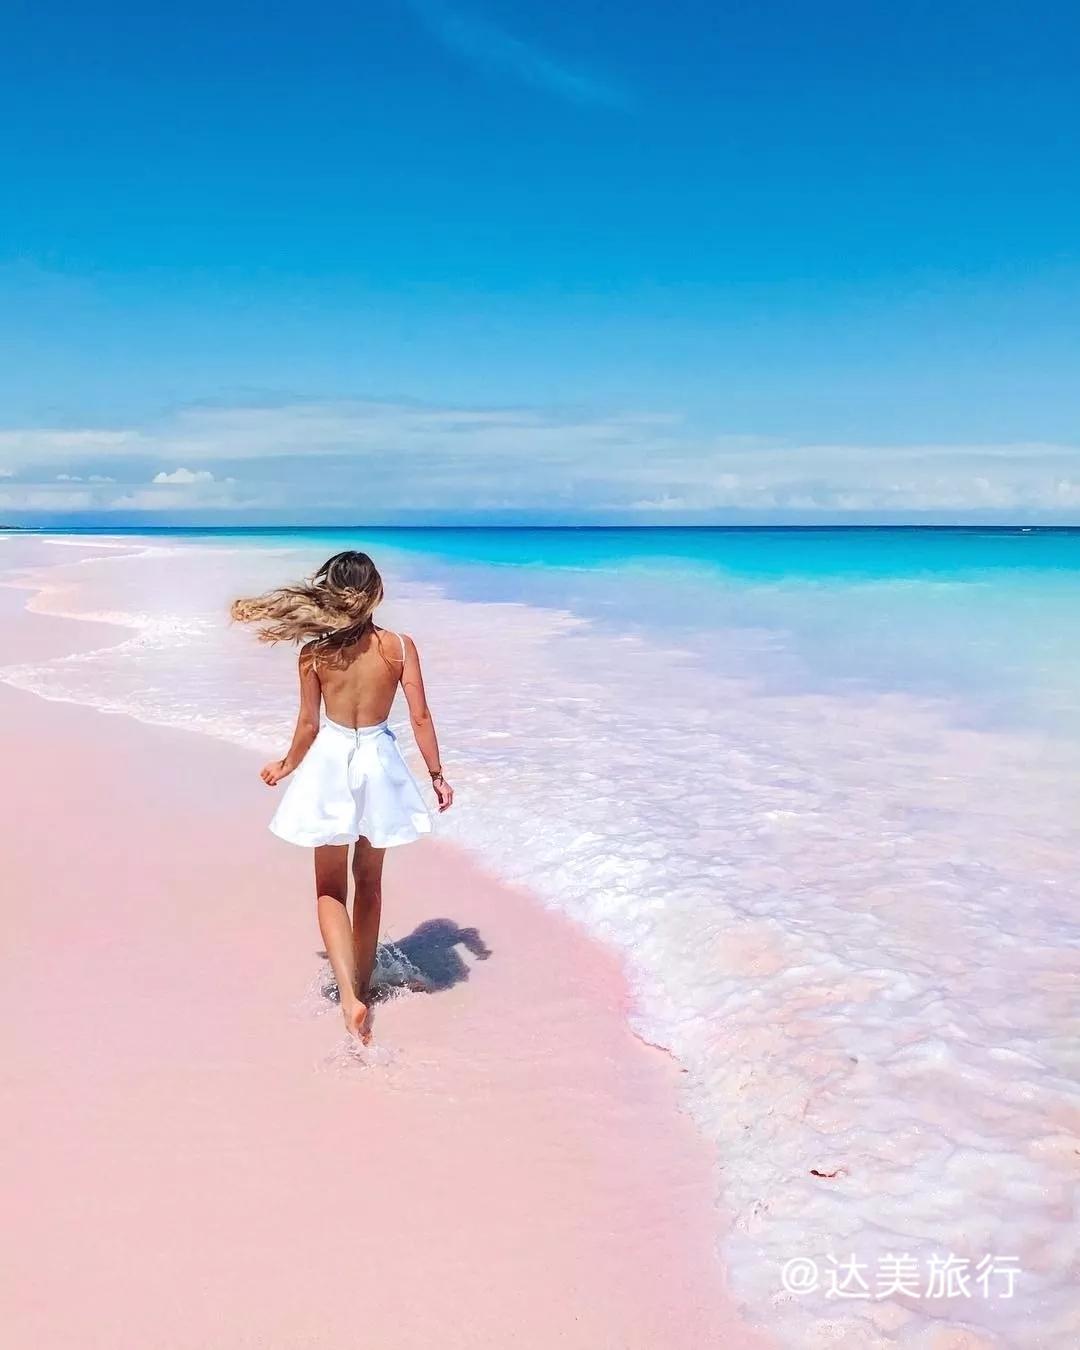 粉色沙滩 - 乐享巴哈马 | Bahamas Joy